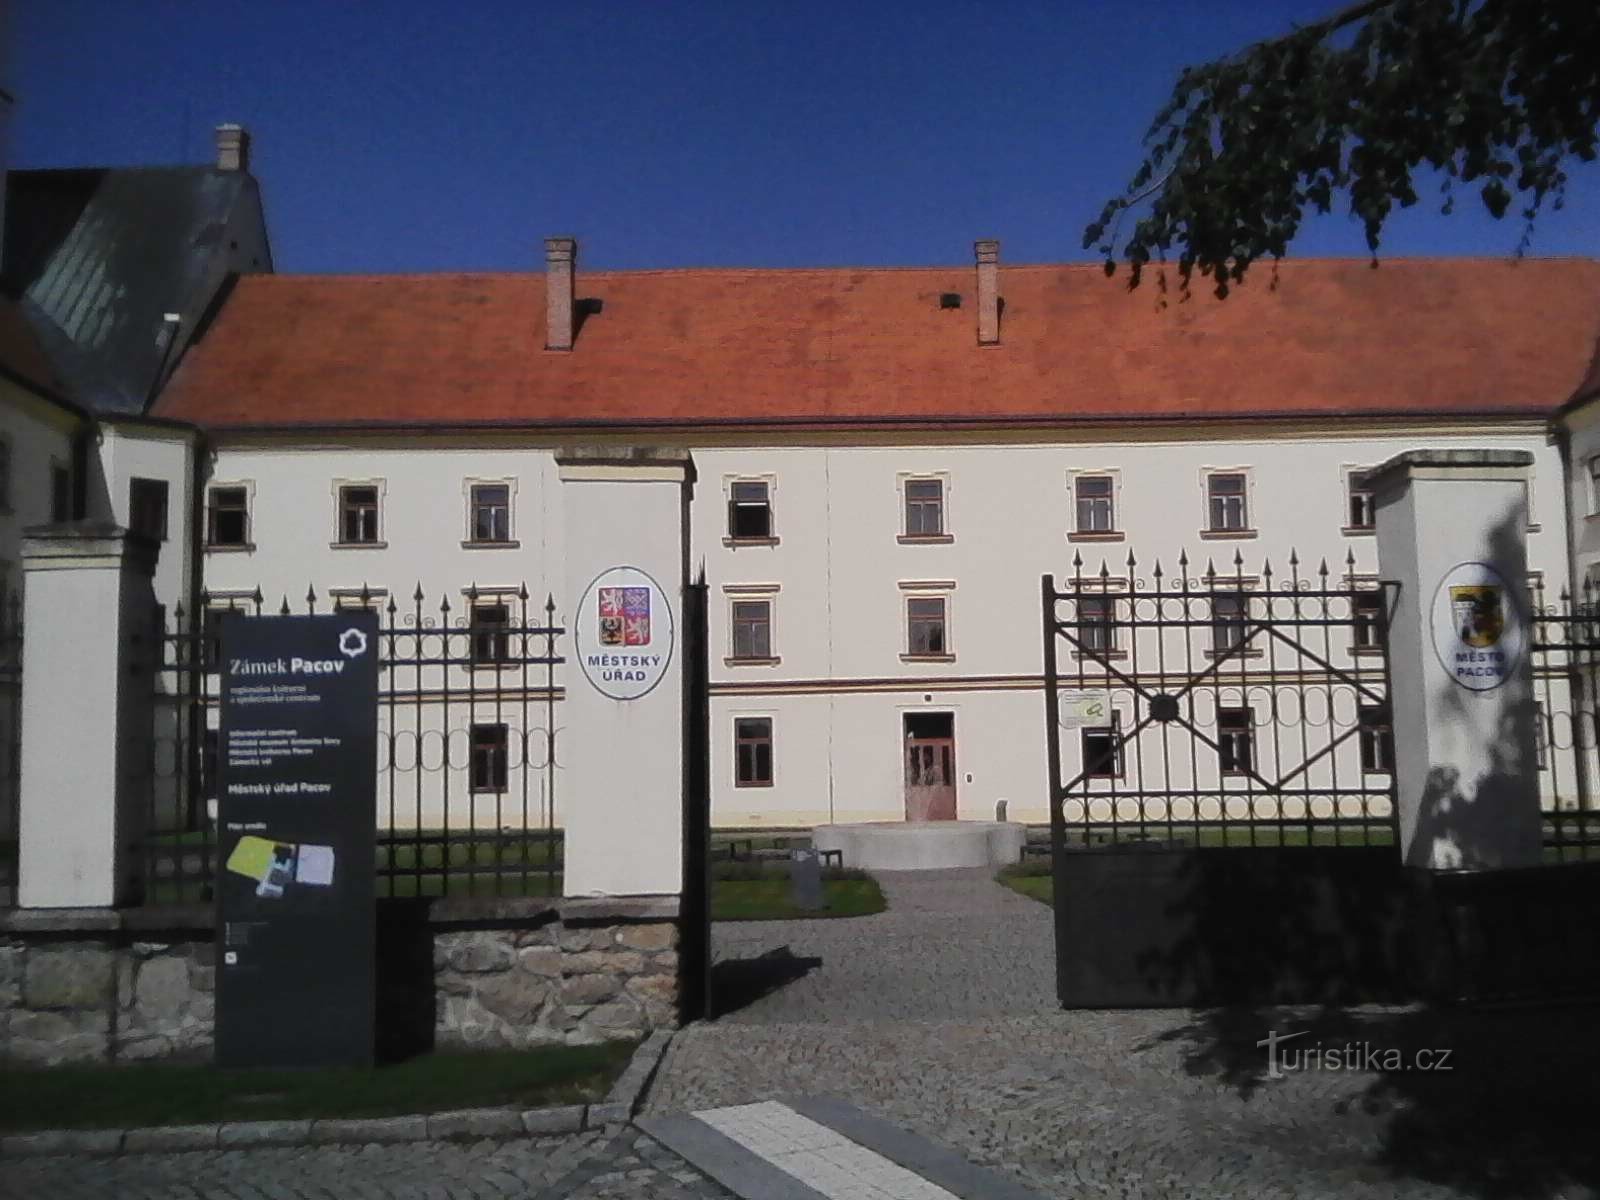 2. パチョフスキー城には、30 年代のアントニン ソヴァ博物館もあります。